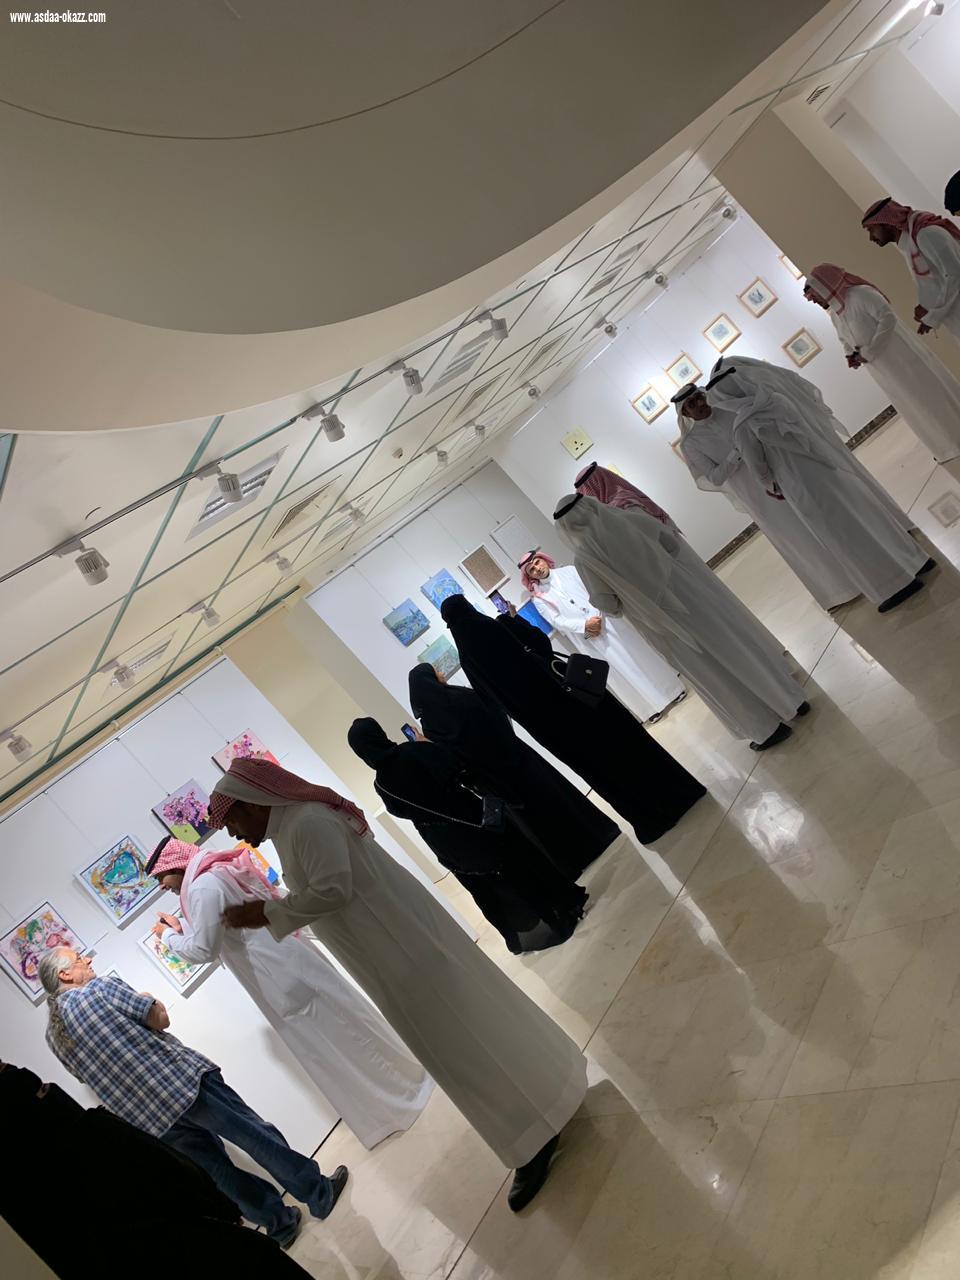 المعرض الفني 30 × 30 في رحاب  جامعه الملك سعود